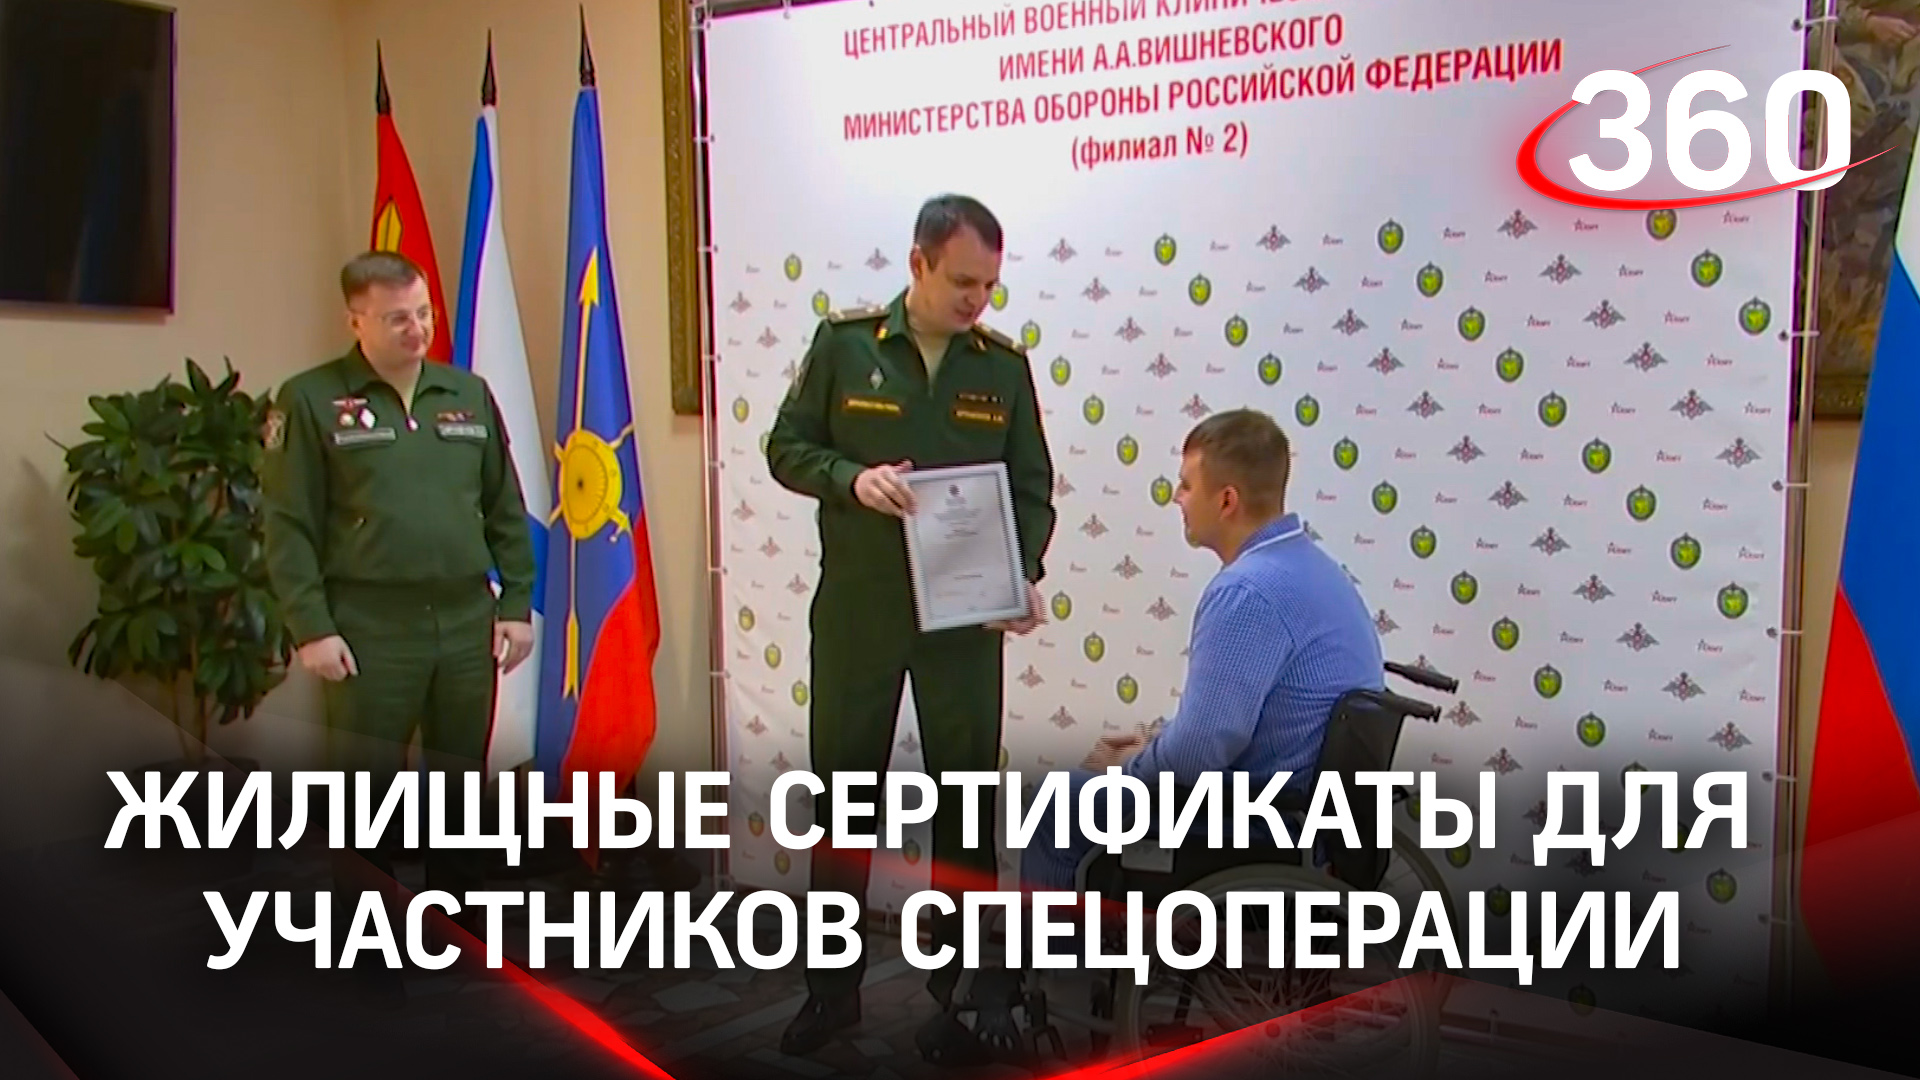 Военная ипотека для участников спецоперации на Донбассе